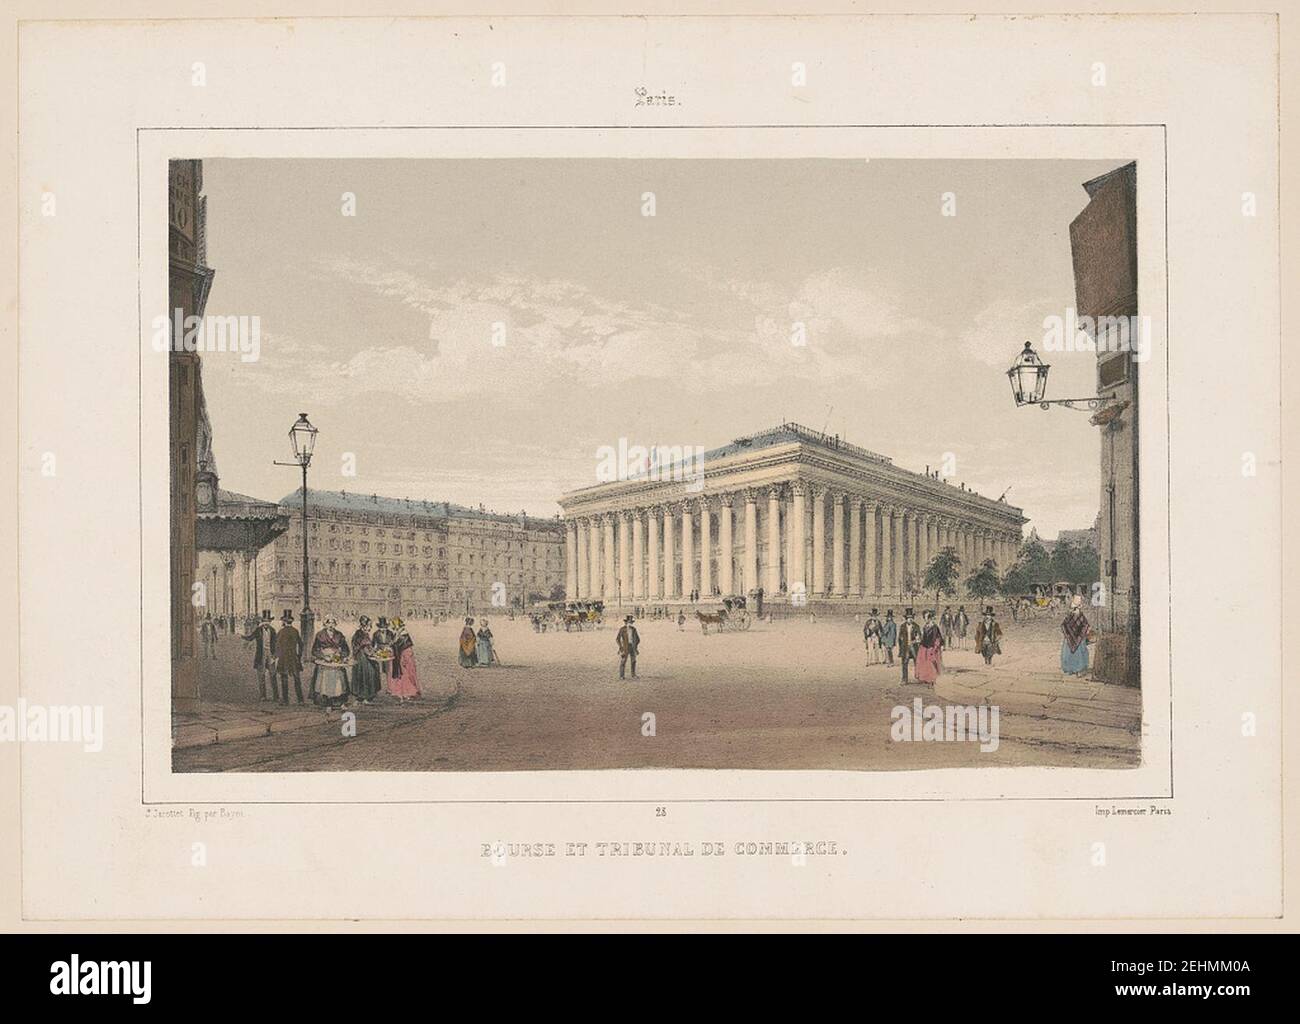 Paris. Bourse et Tribunal de Commerce - J. Jacottet fig. par Bayot ; Imp. Lemercier, Paris. Stock Photo